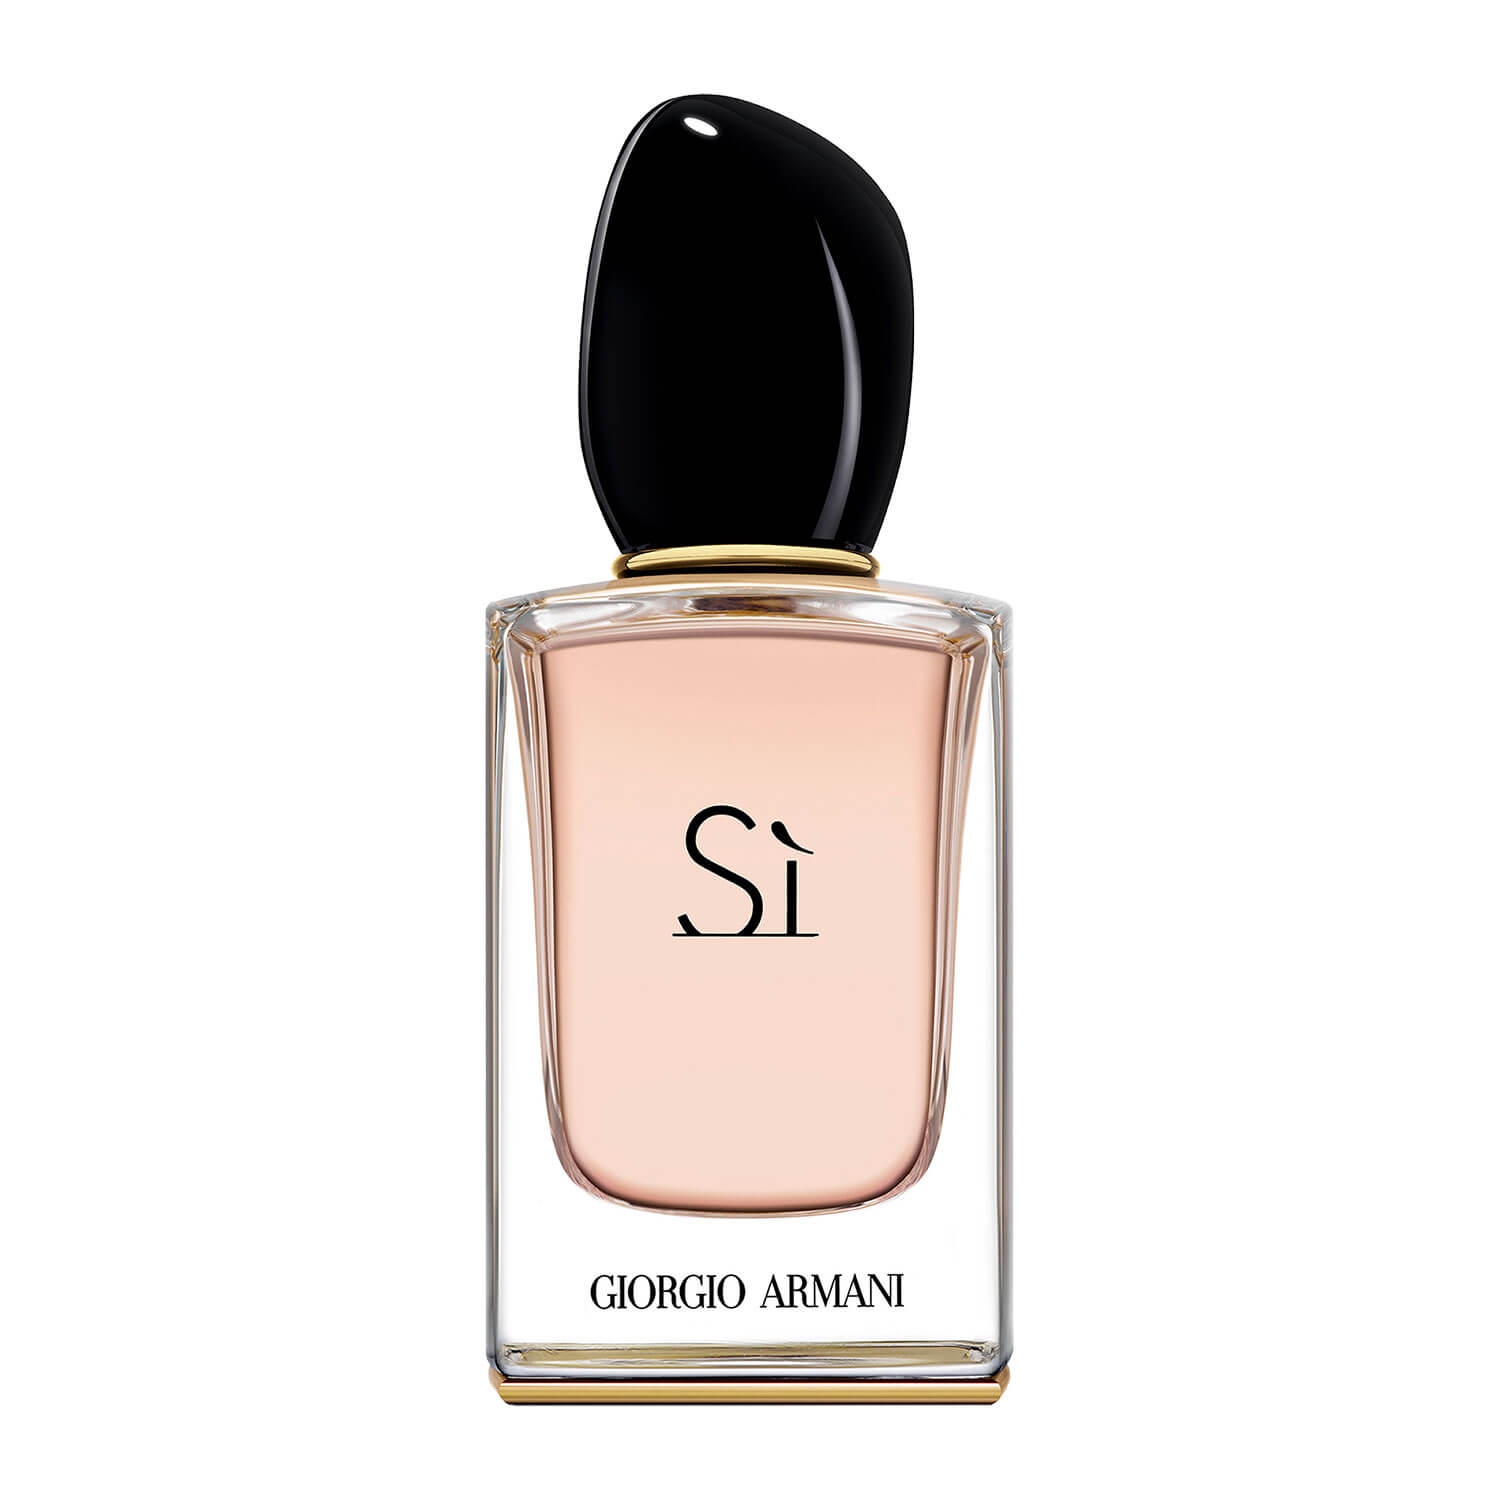 Produktbild von Sì - Eau de Parfum